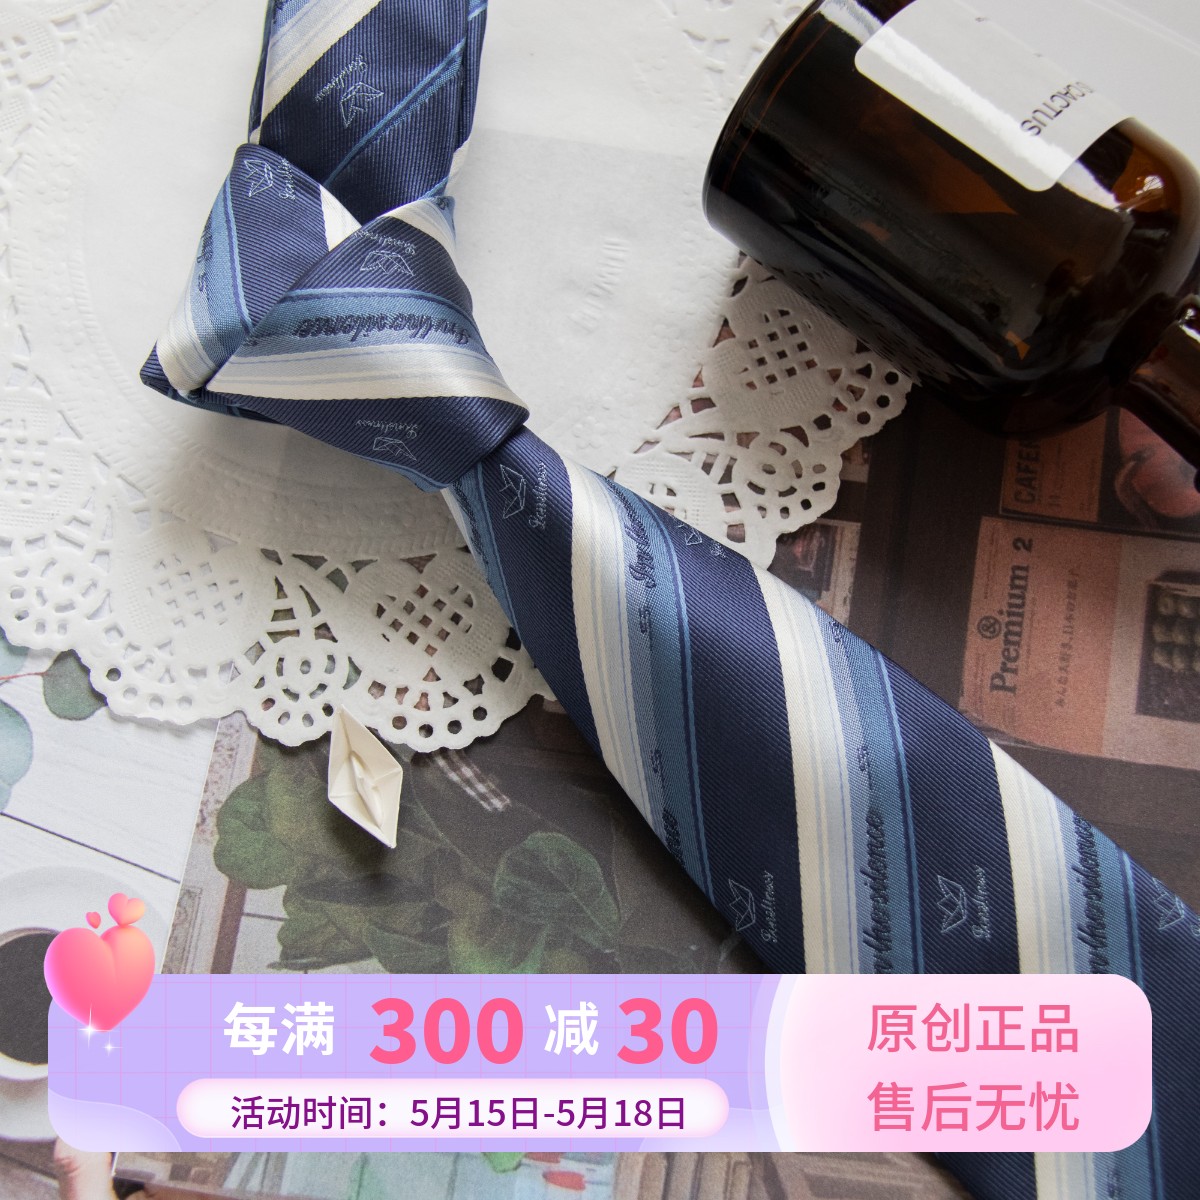 【潘特维拉】折纸 JK制服原创设计领带领结衬衫小物学院日系校供